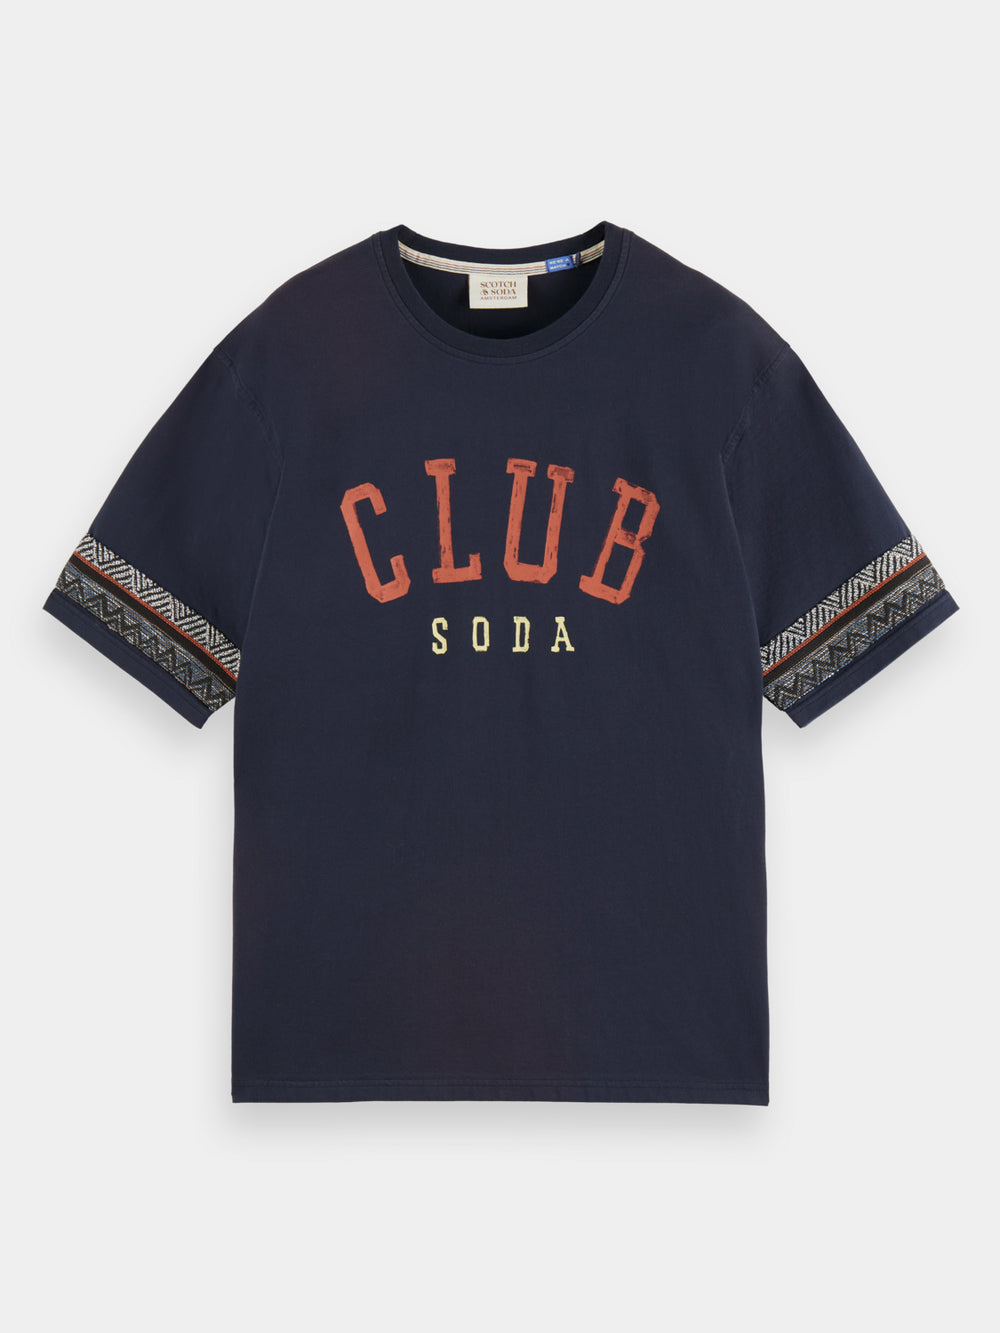 Relaxed-fit Club Soda t-shirt - Scotch & Soda NZ